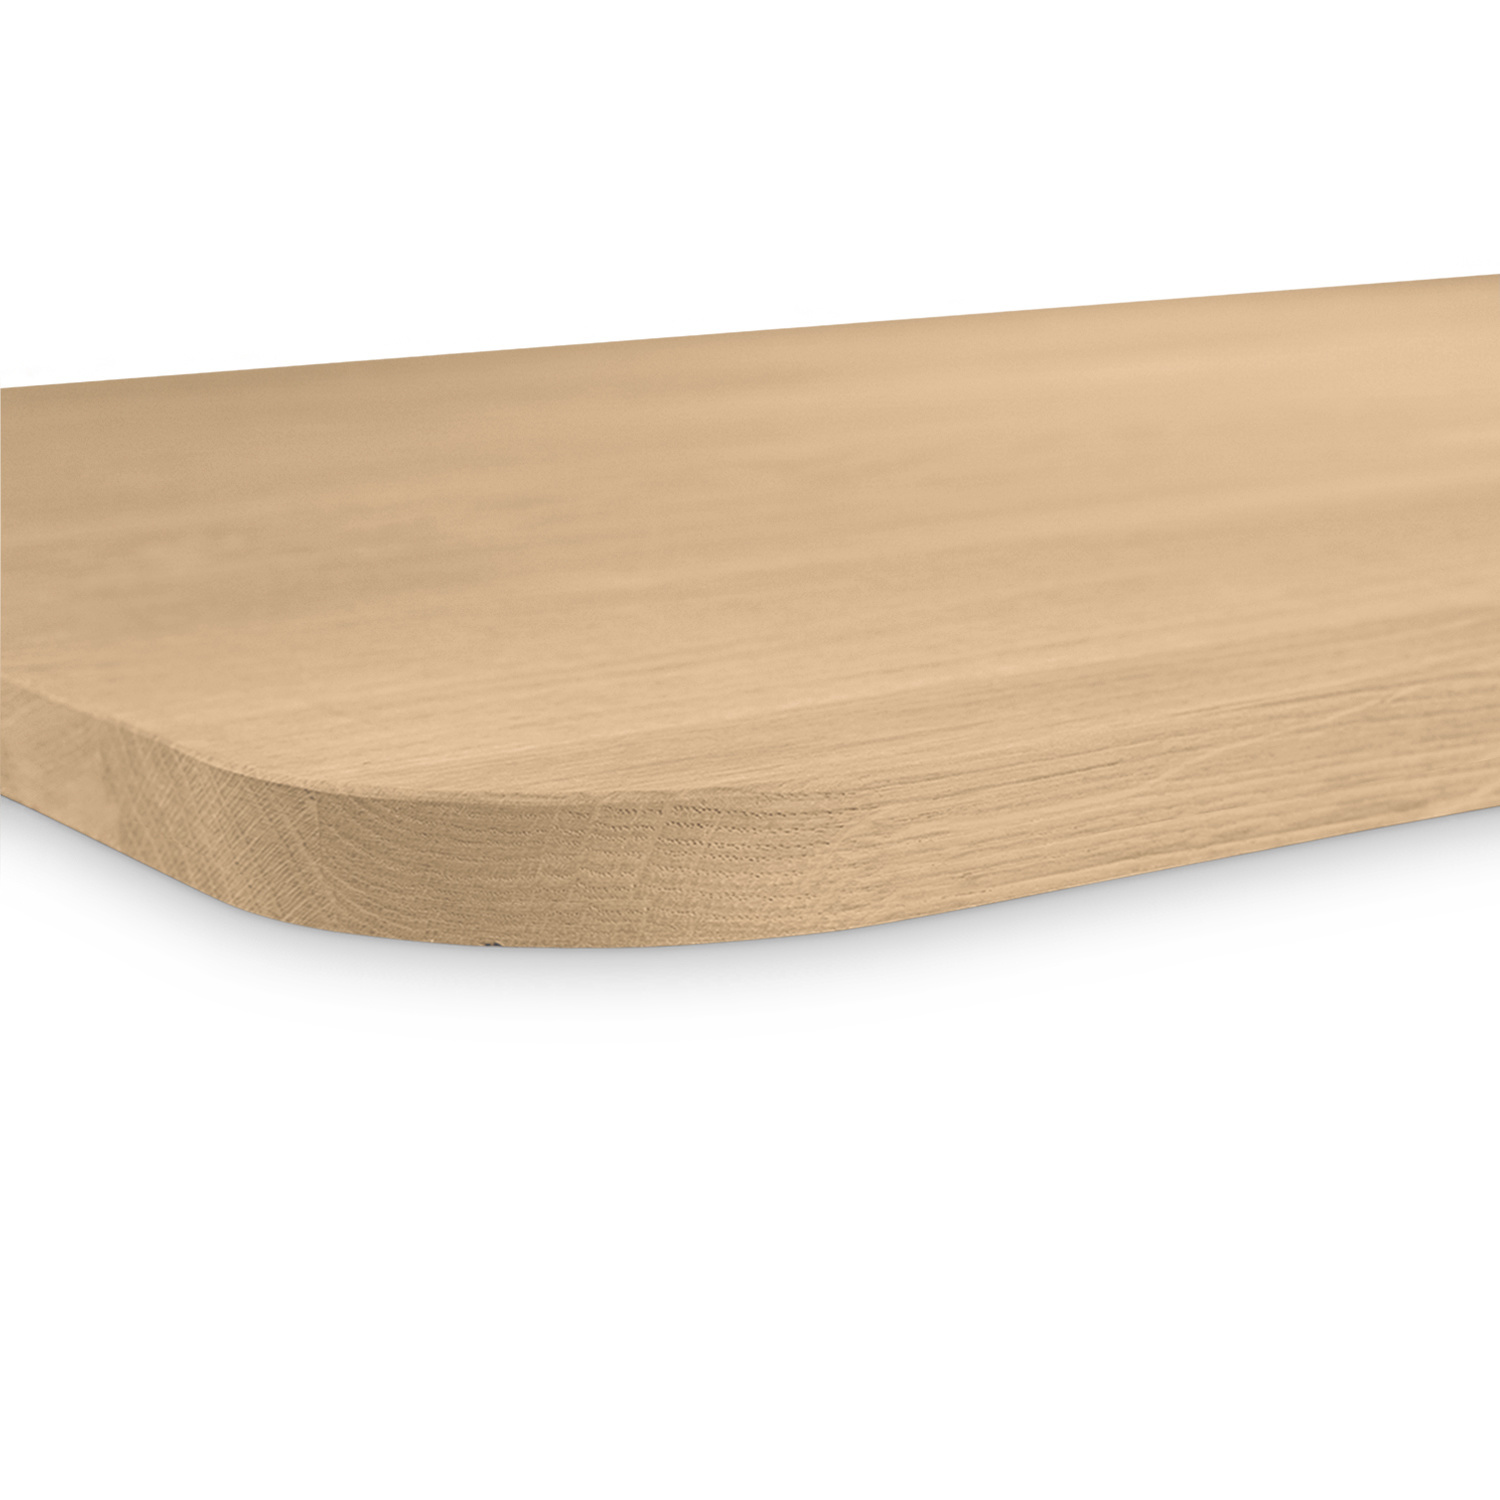  Tischplatte Eiche - mit runden Ecken - 4 cm dick (1-Schicht) - Breite Lamellen (10 - 12 cm breit) - Eichenholz A-Qualität - verleimt & künstlich getrocknet (HF 8-12%) - mit abgerundeten Kanten - verschiedene Größen